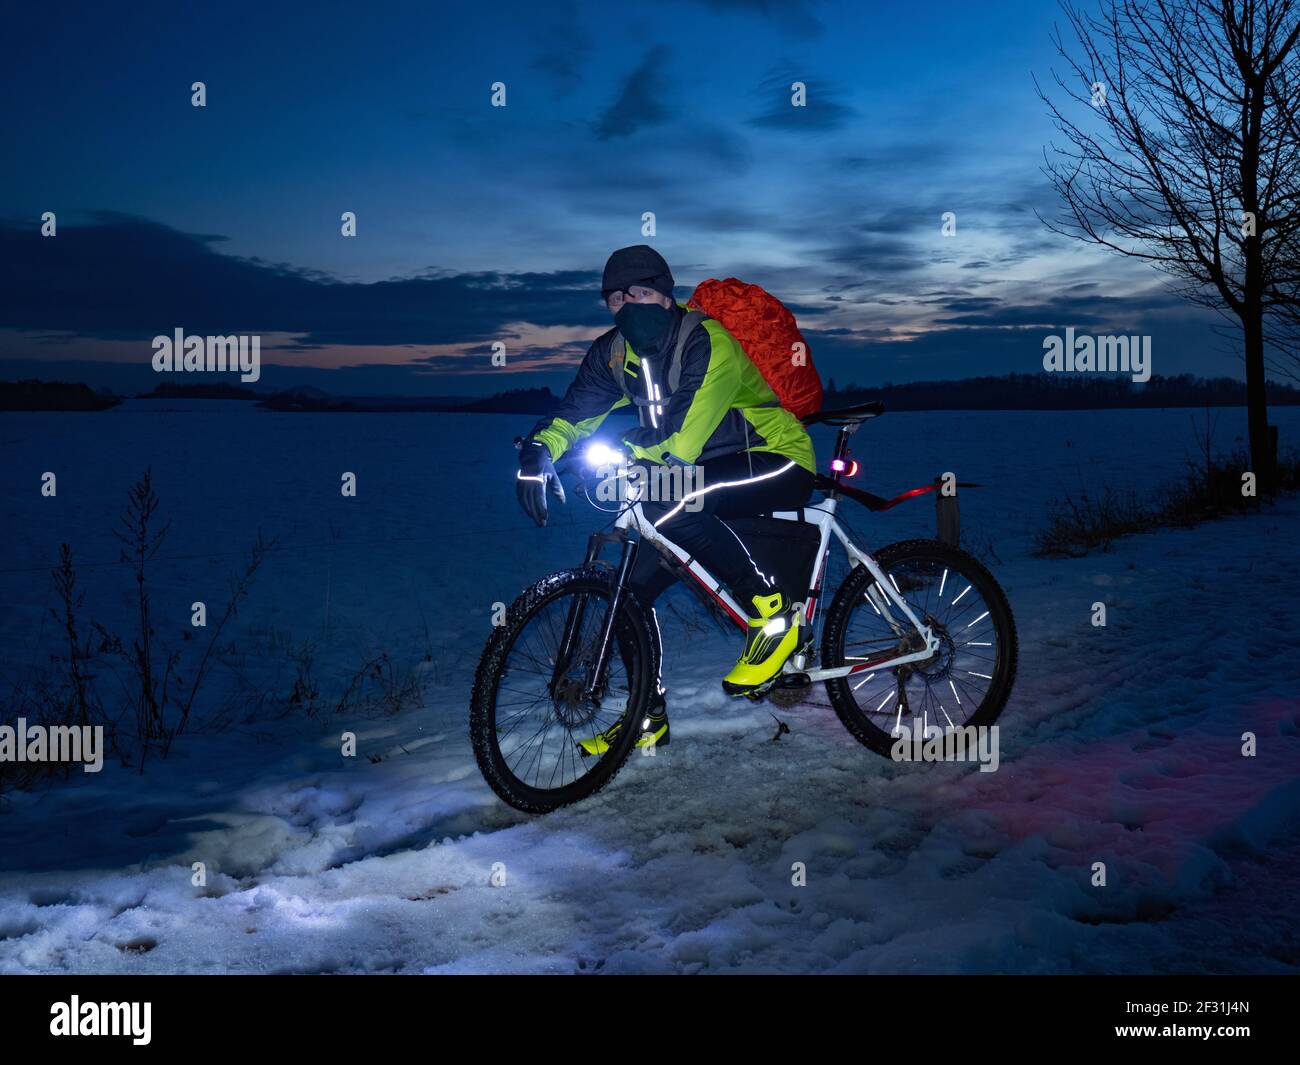 Guy Radfahrer sitzt auf einem MTB während einer Nachtfahrt. Stadtpark und leichter Schneefall im Nebel. Stockfoto